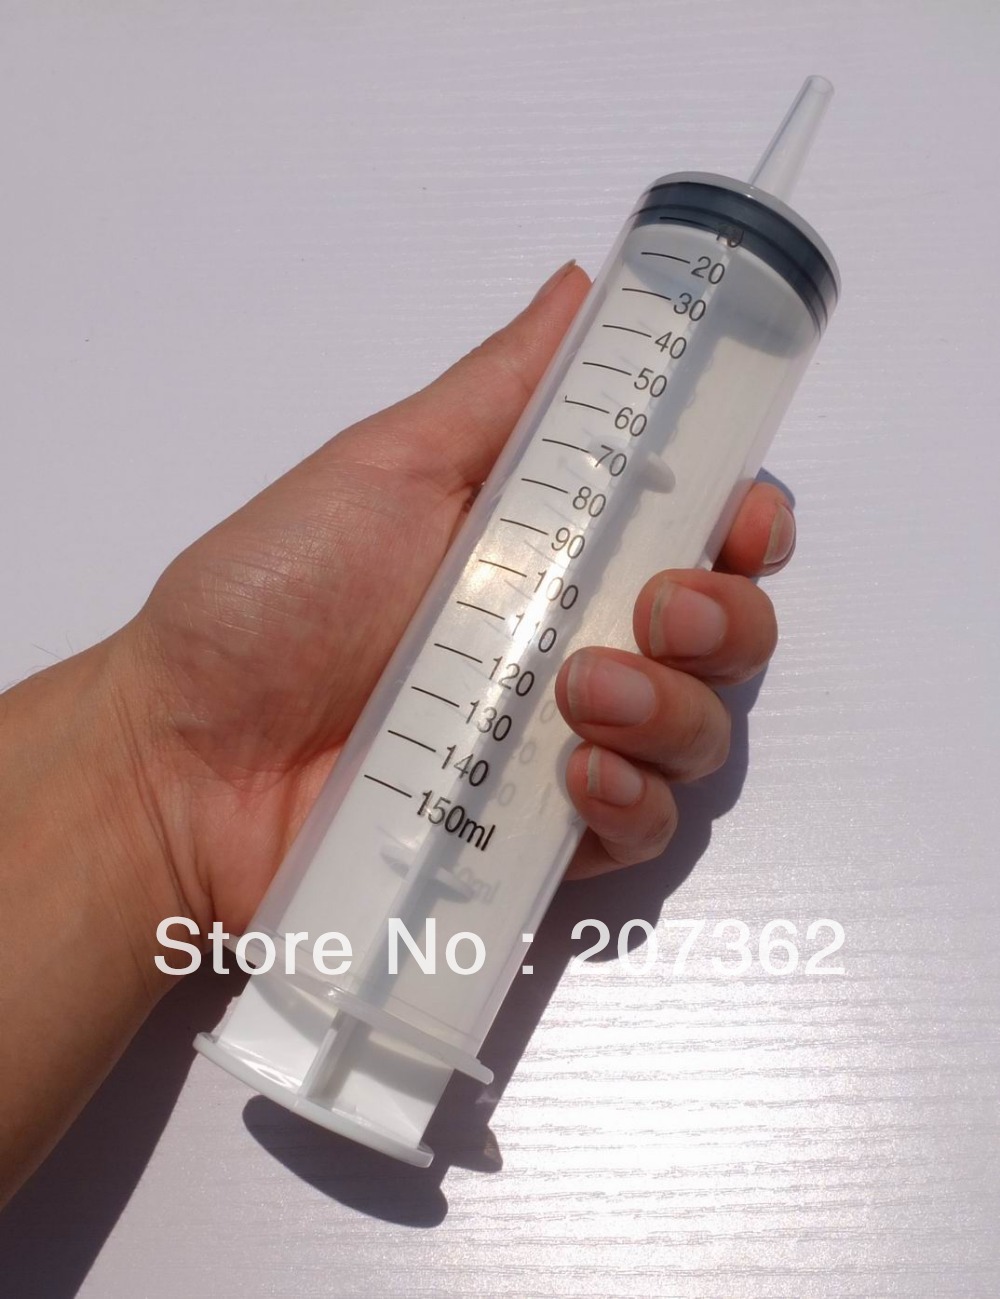 Syringe-150ml-with-catheter-tip.jpg